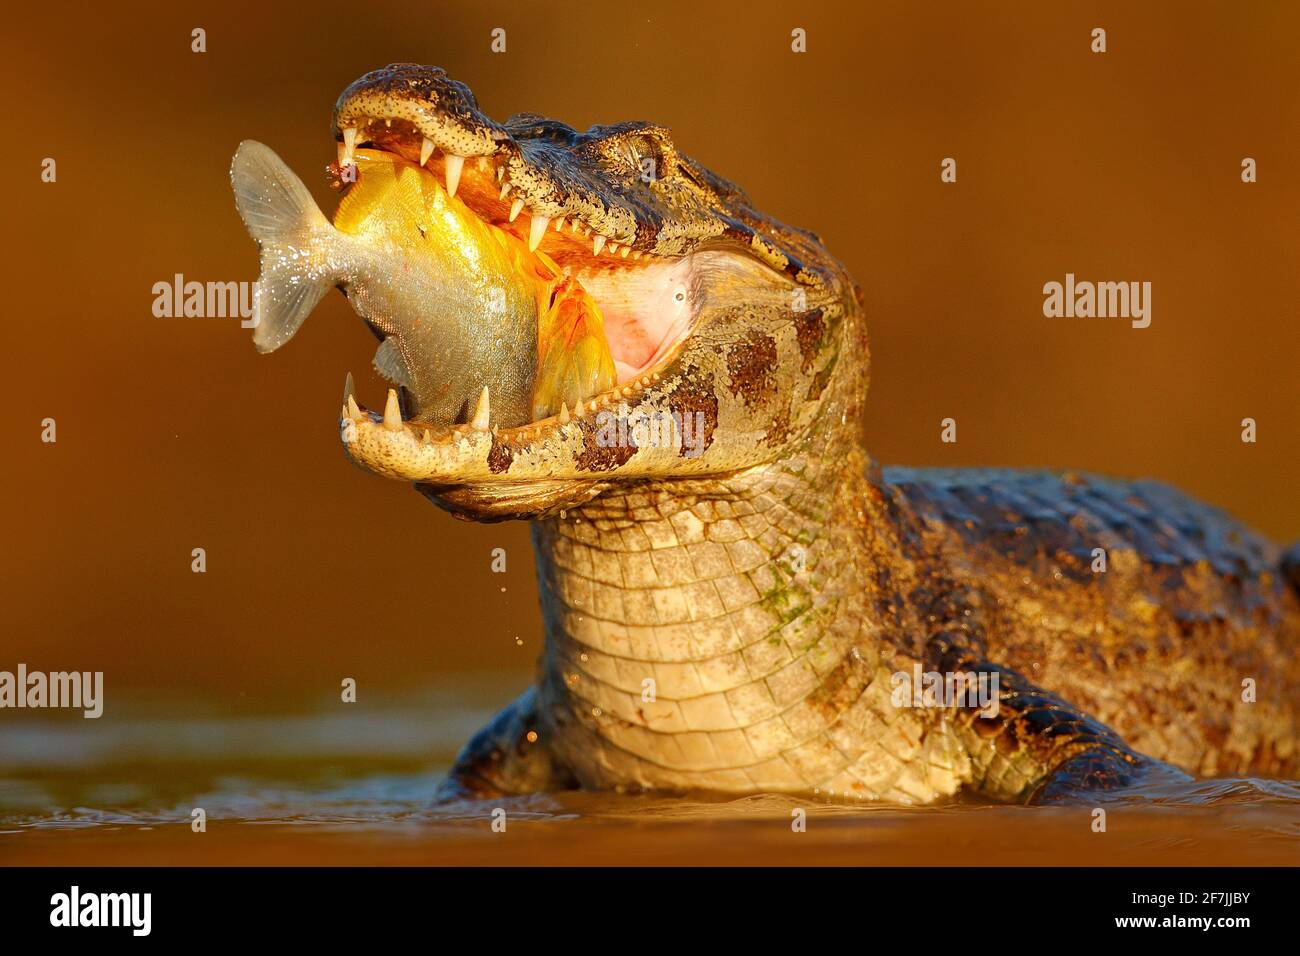 Coccodrillo cattura il pesce in acqua di fiume, luce della sera. Yacare Caiman, coccodrillo con pesce in museruola aperta con denti grandi, Pantanal, Brasile. Dettaglio portrai Foto Stock